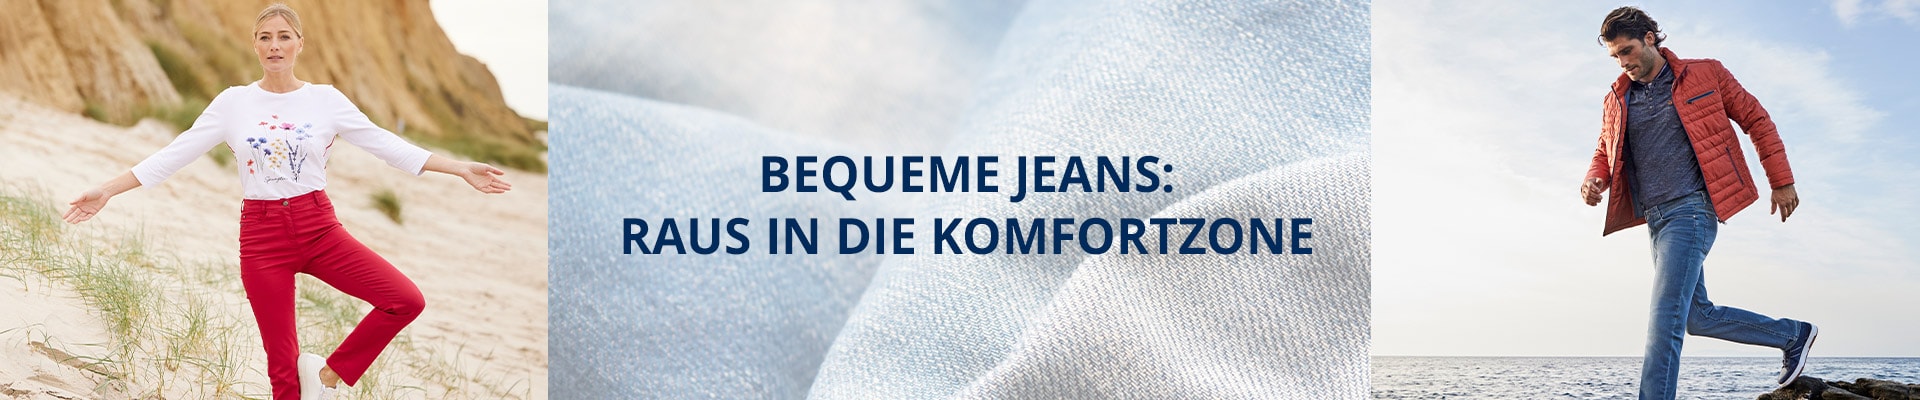 Bequeme Jeans: Raus in die Komfortzone